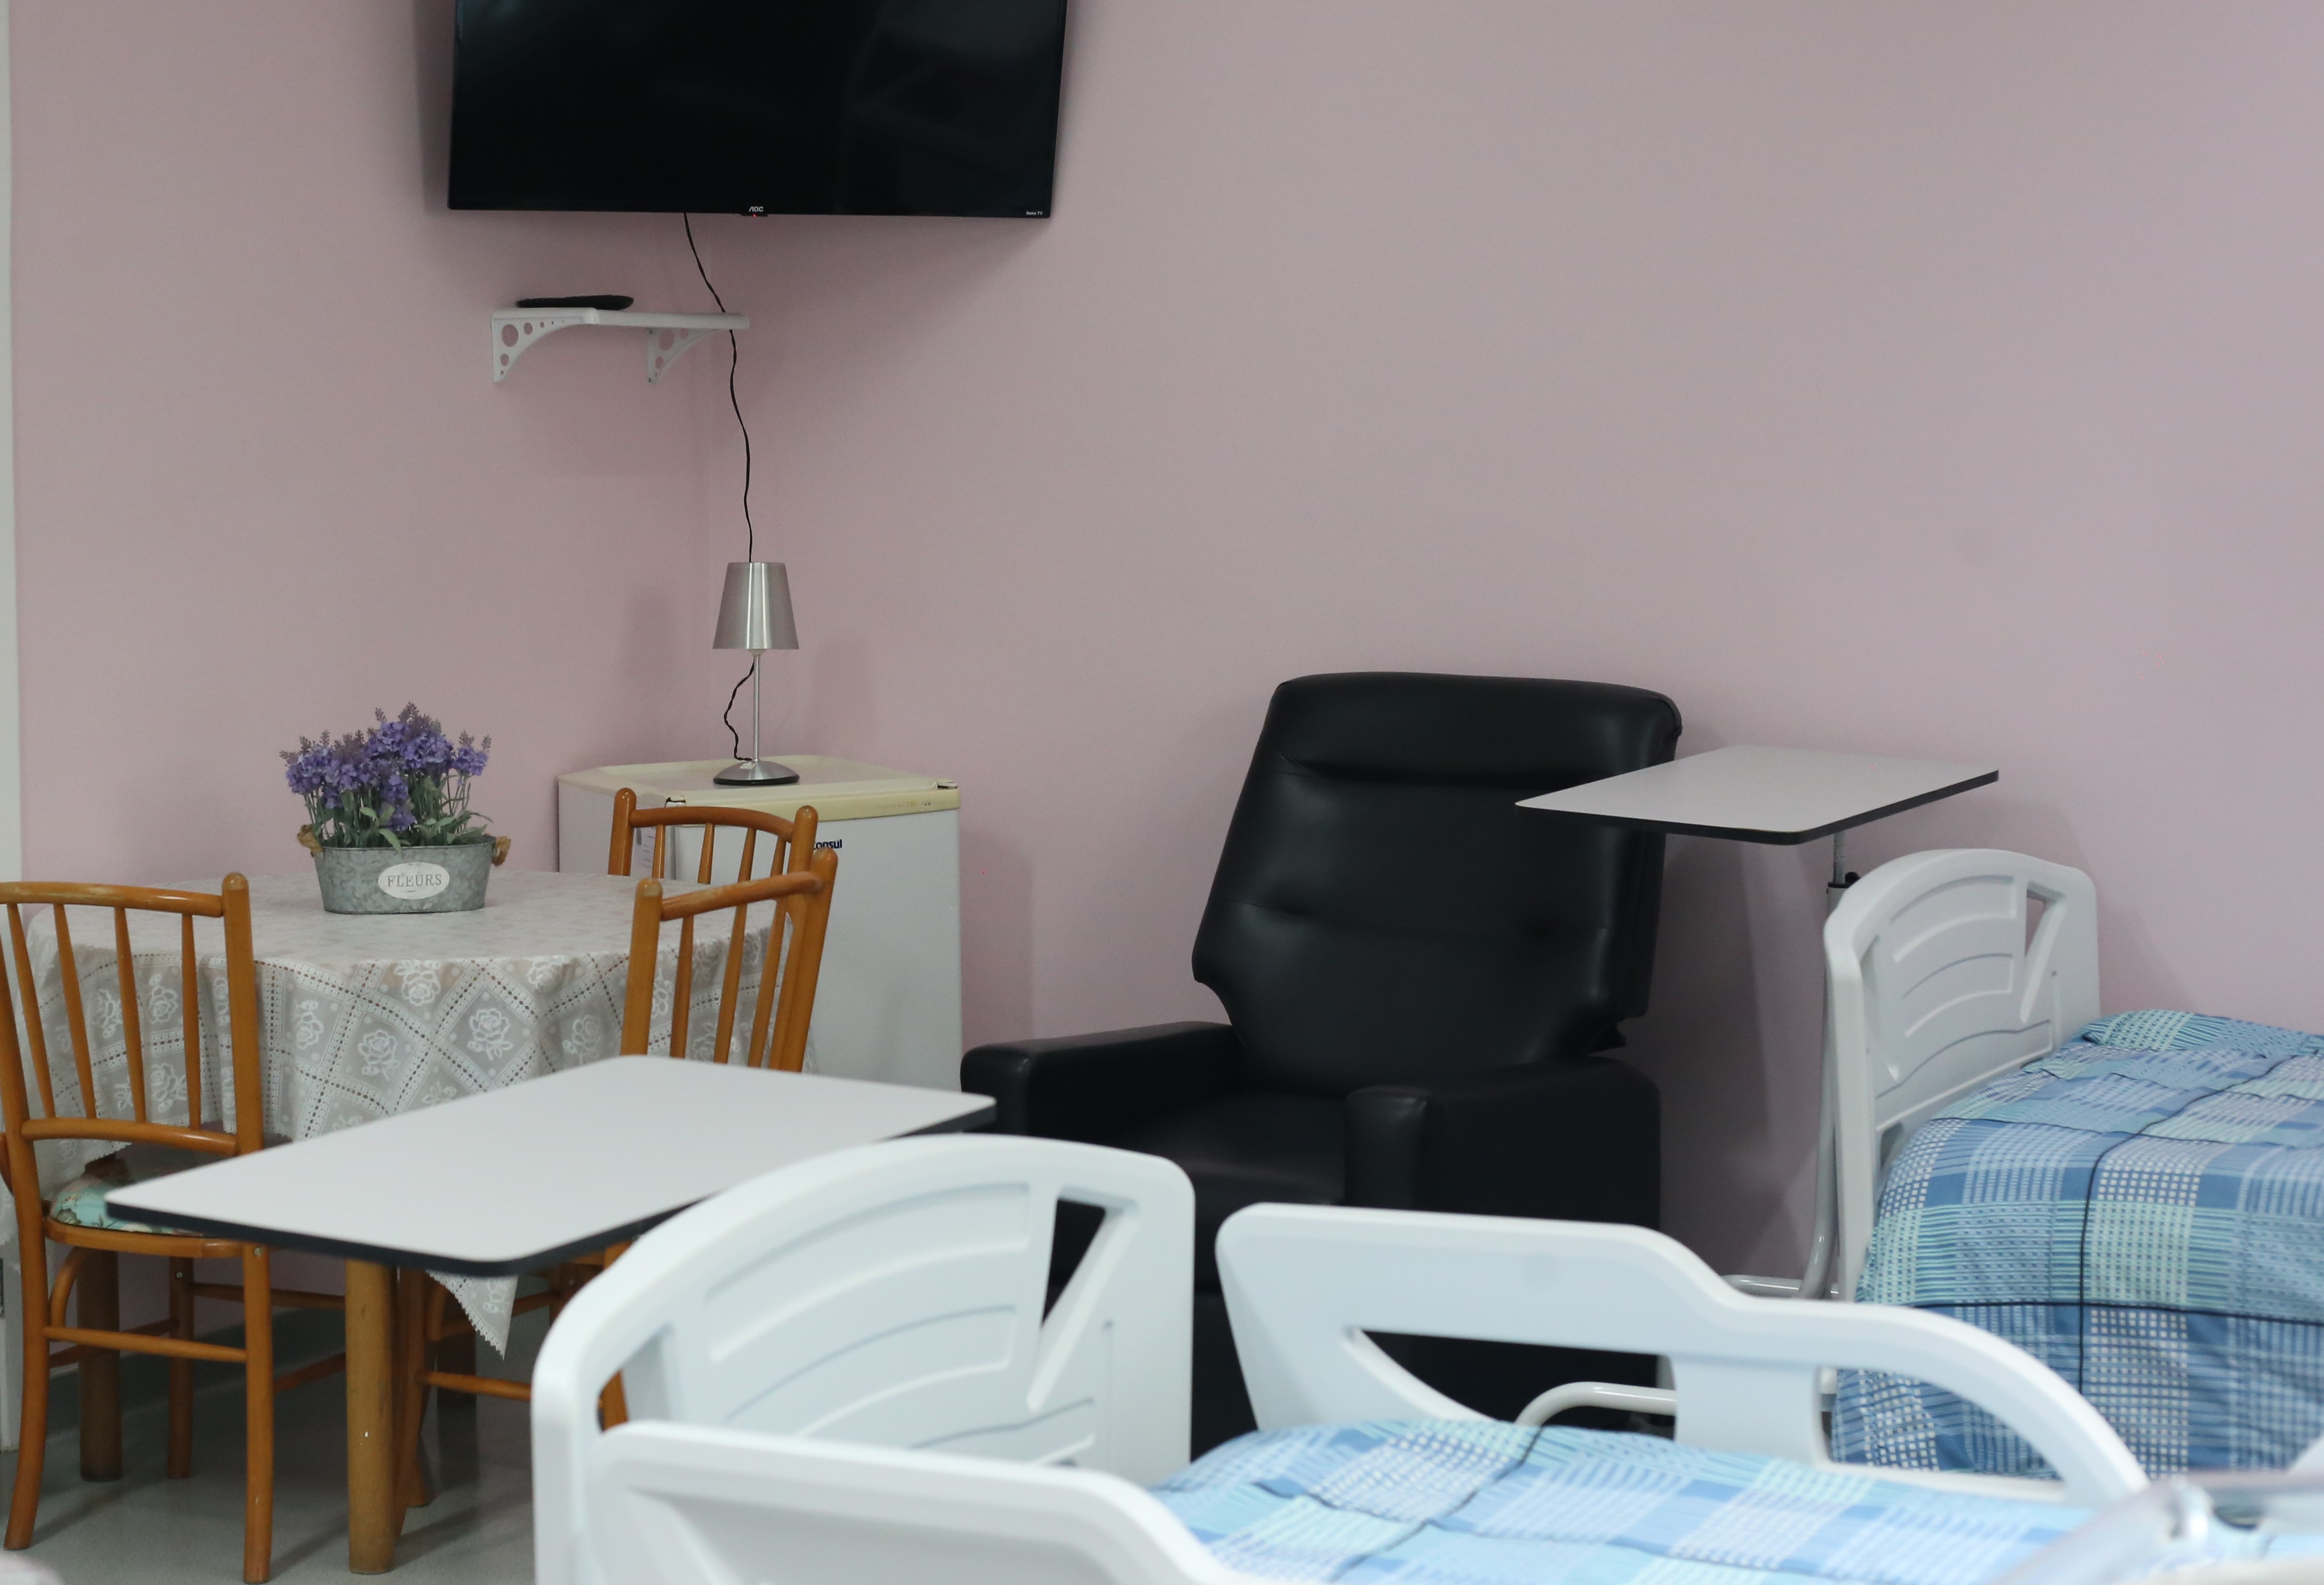 A foto mostra uma suíte hospitalar; nela, vê-se duas camas com edredons em tons de azul, uma poltrona preta, além de uma mesa, frigobar e televisão